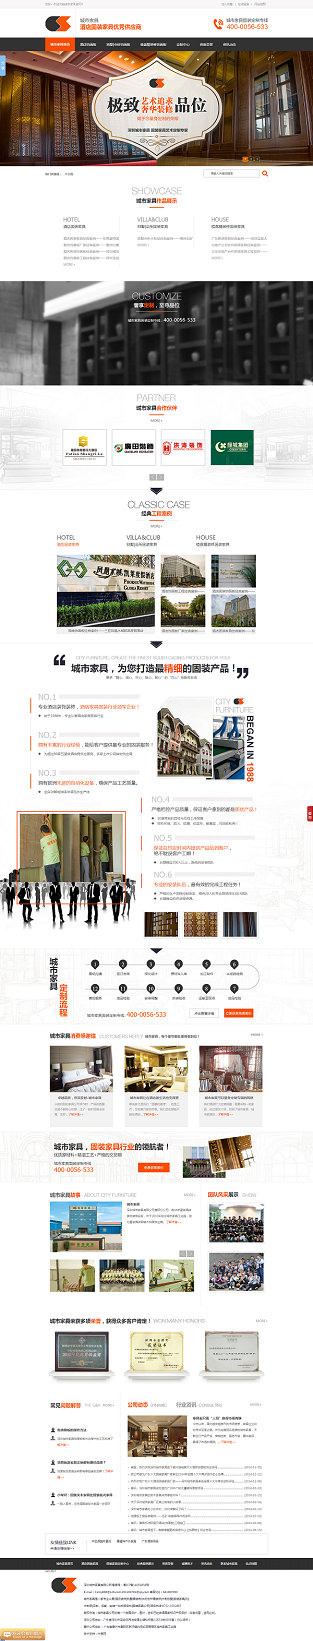 深圳城市固装家具营销型网站案例展示